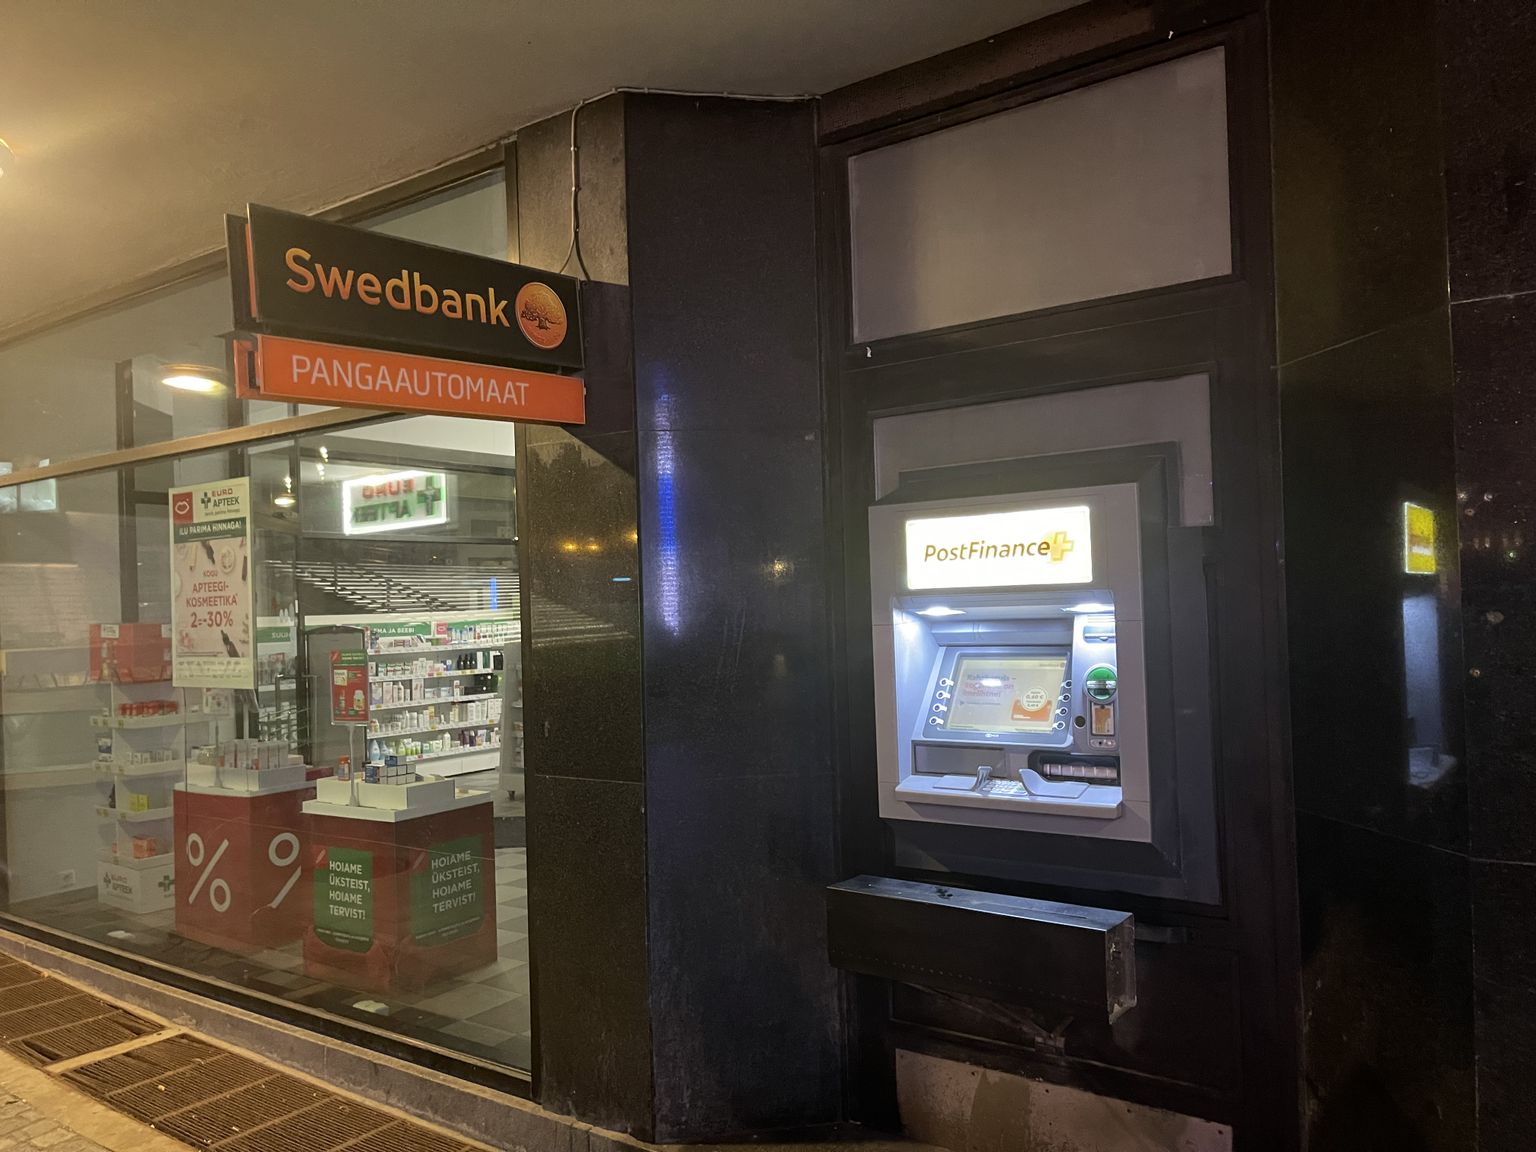 Swedbanki sularahaautomaatide töös võib olla häireid.